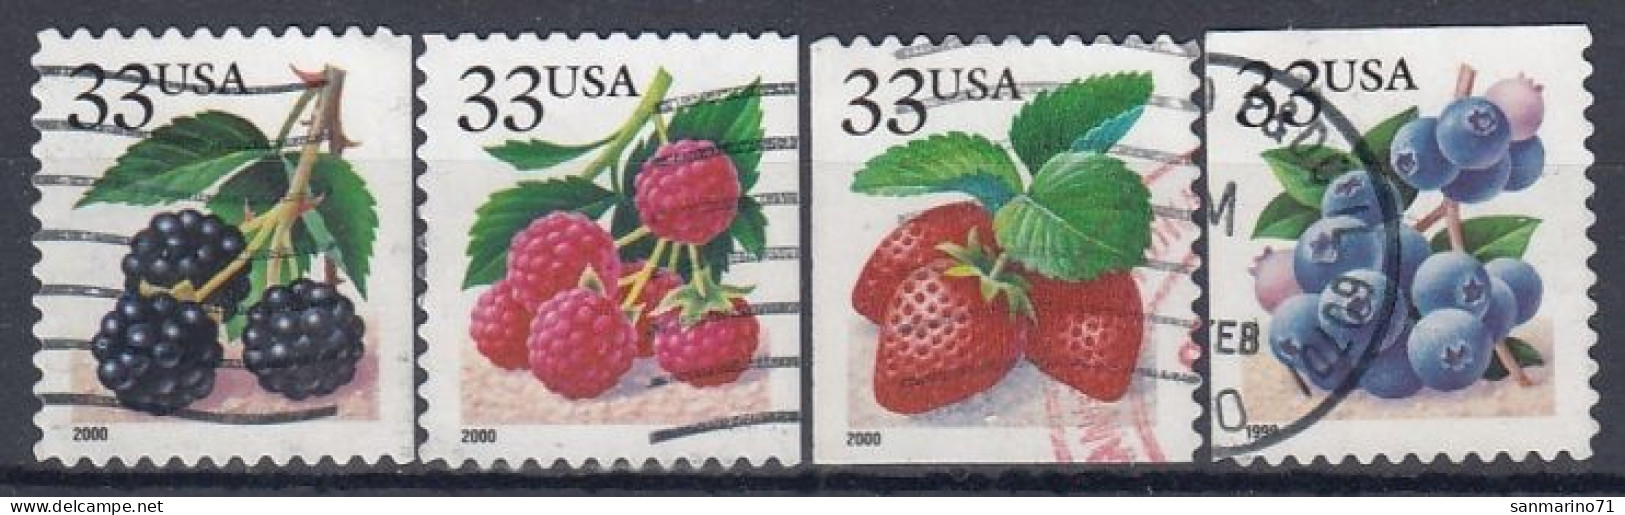 UNITED STATES 3110-3113,used,falc Hinged - Fruit